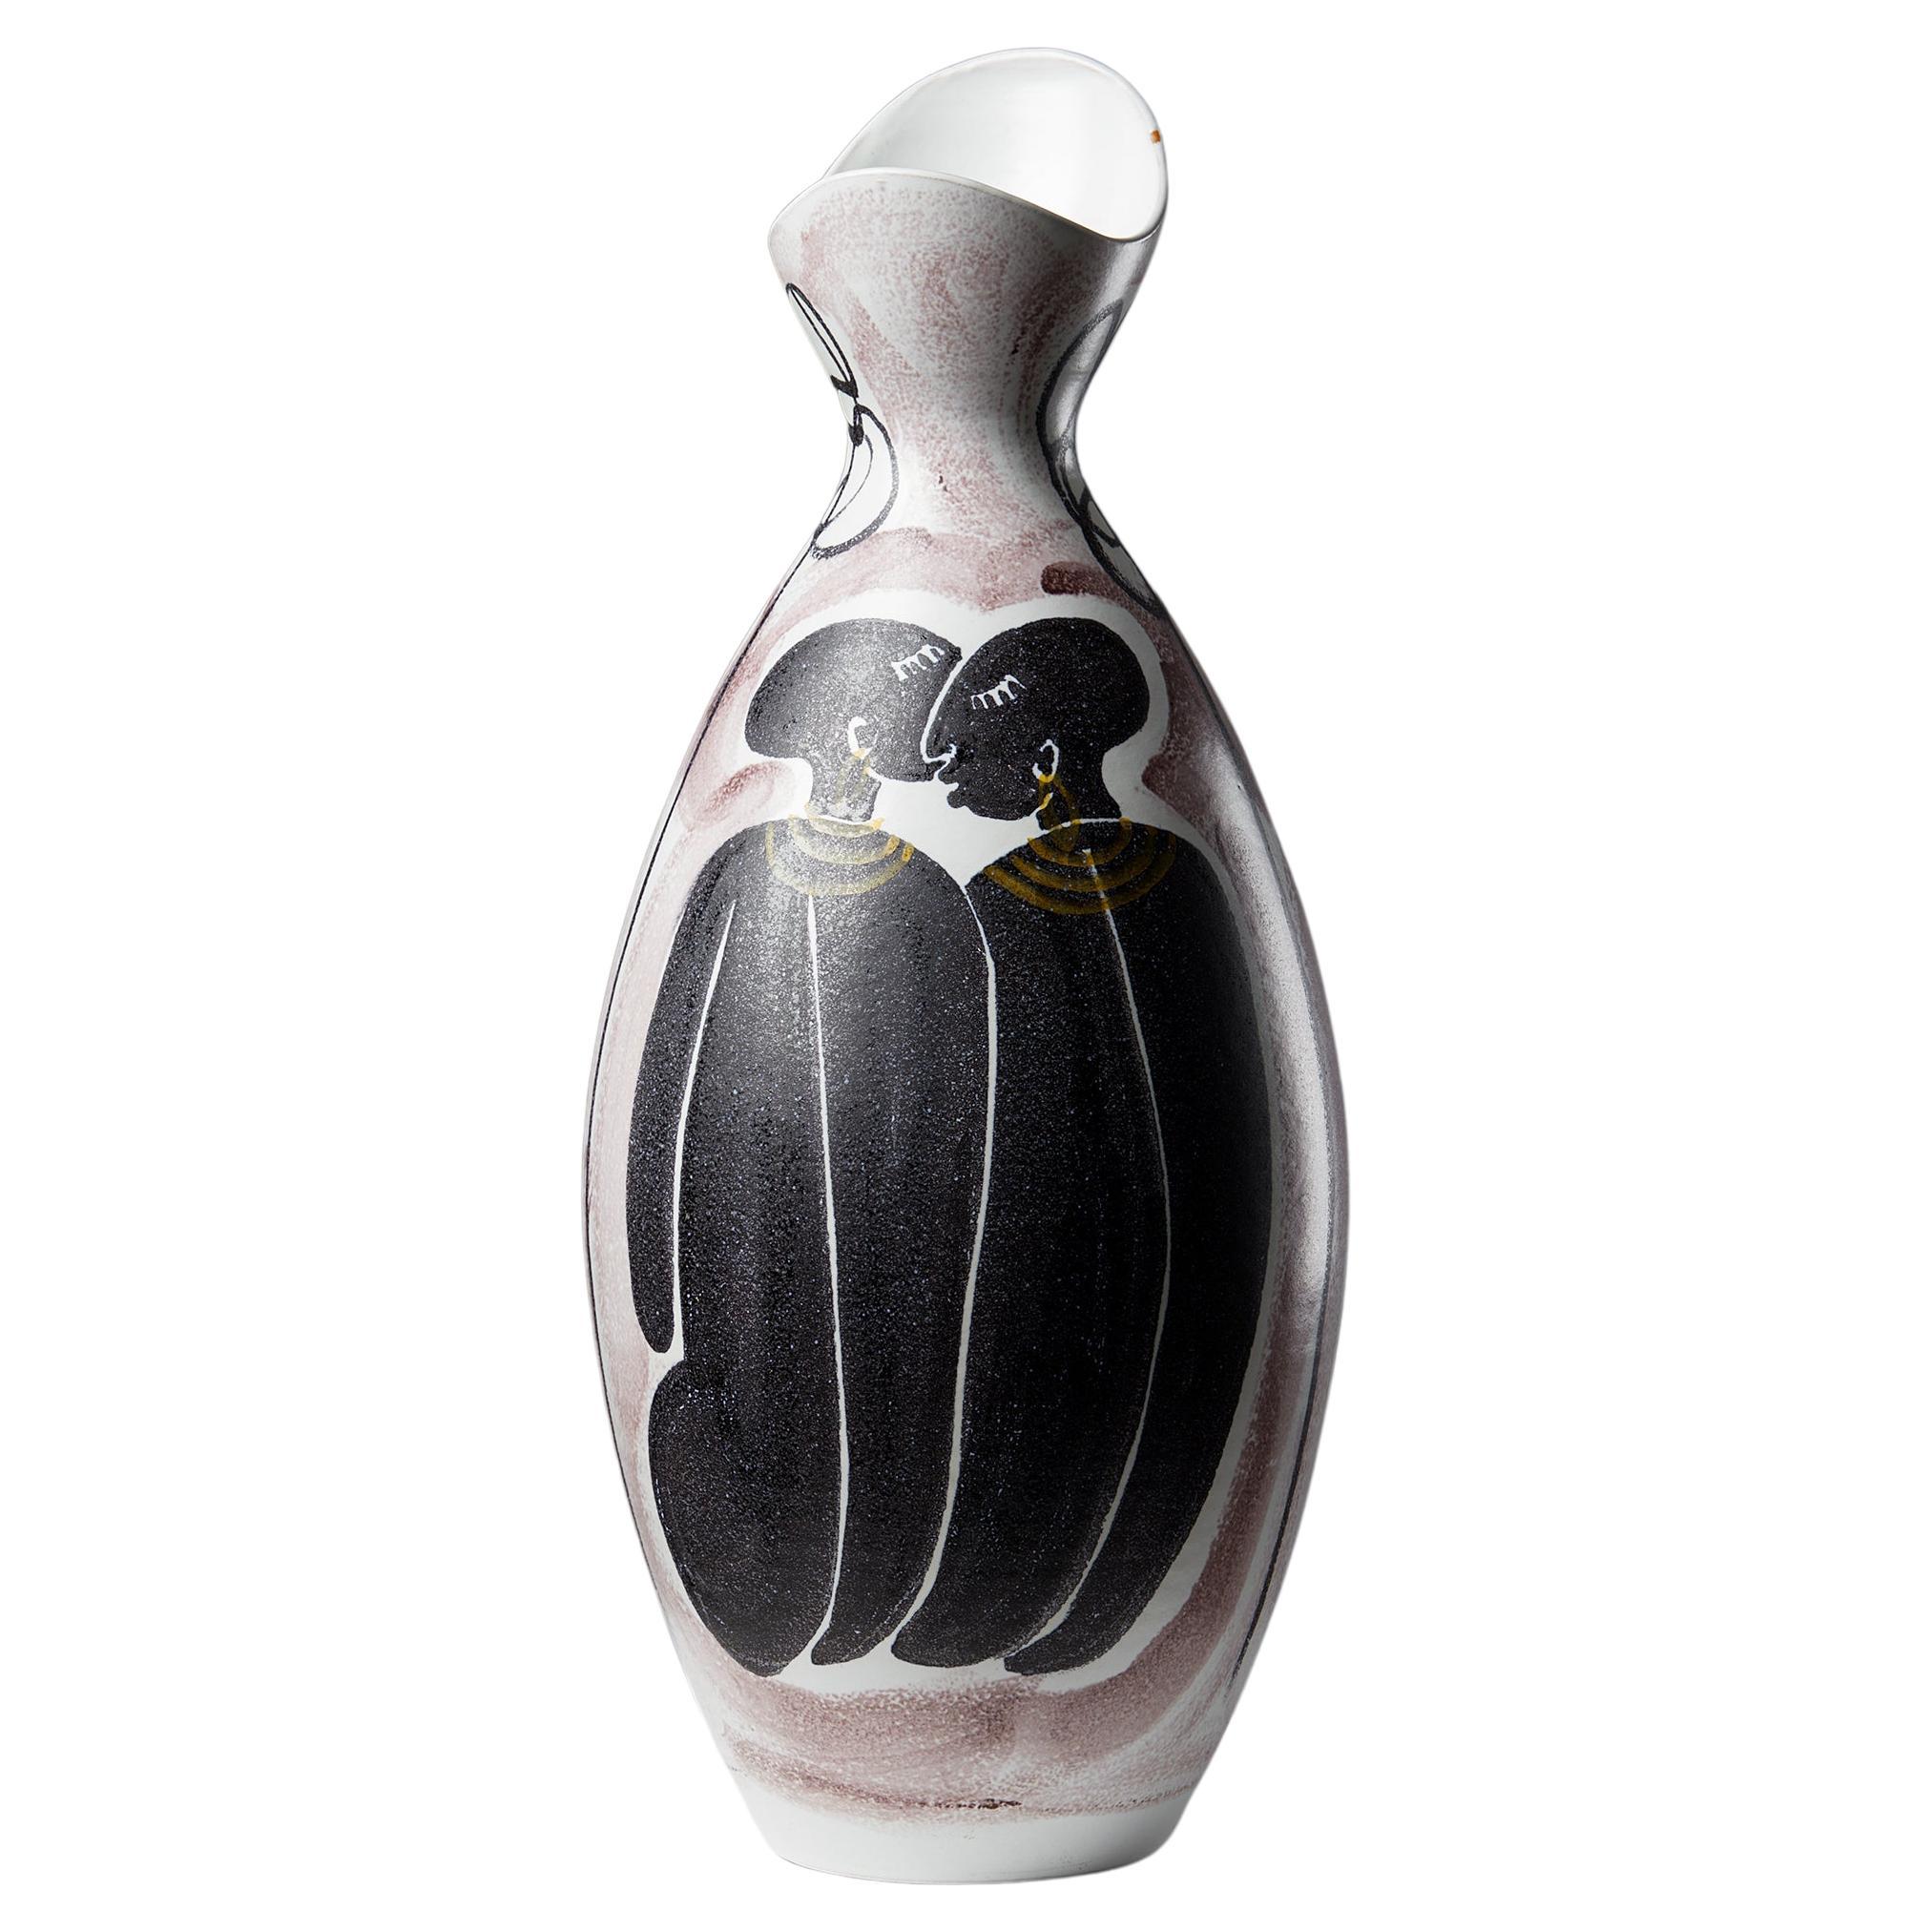 Die Vase wurde von Mette Doller für Alfred Johansson entworfen, Schweden, 1950er Jahre